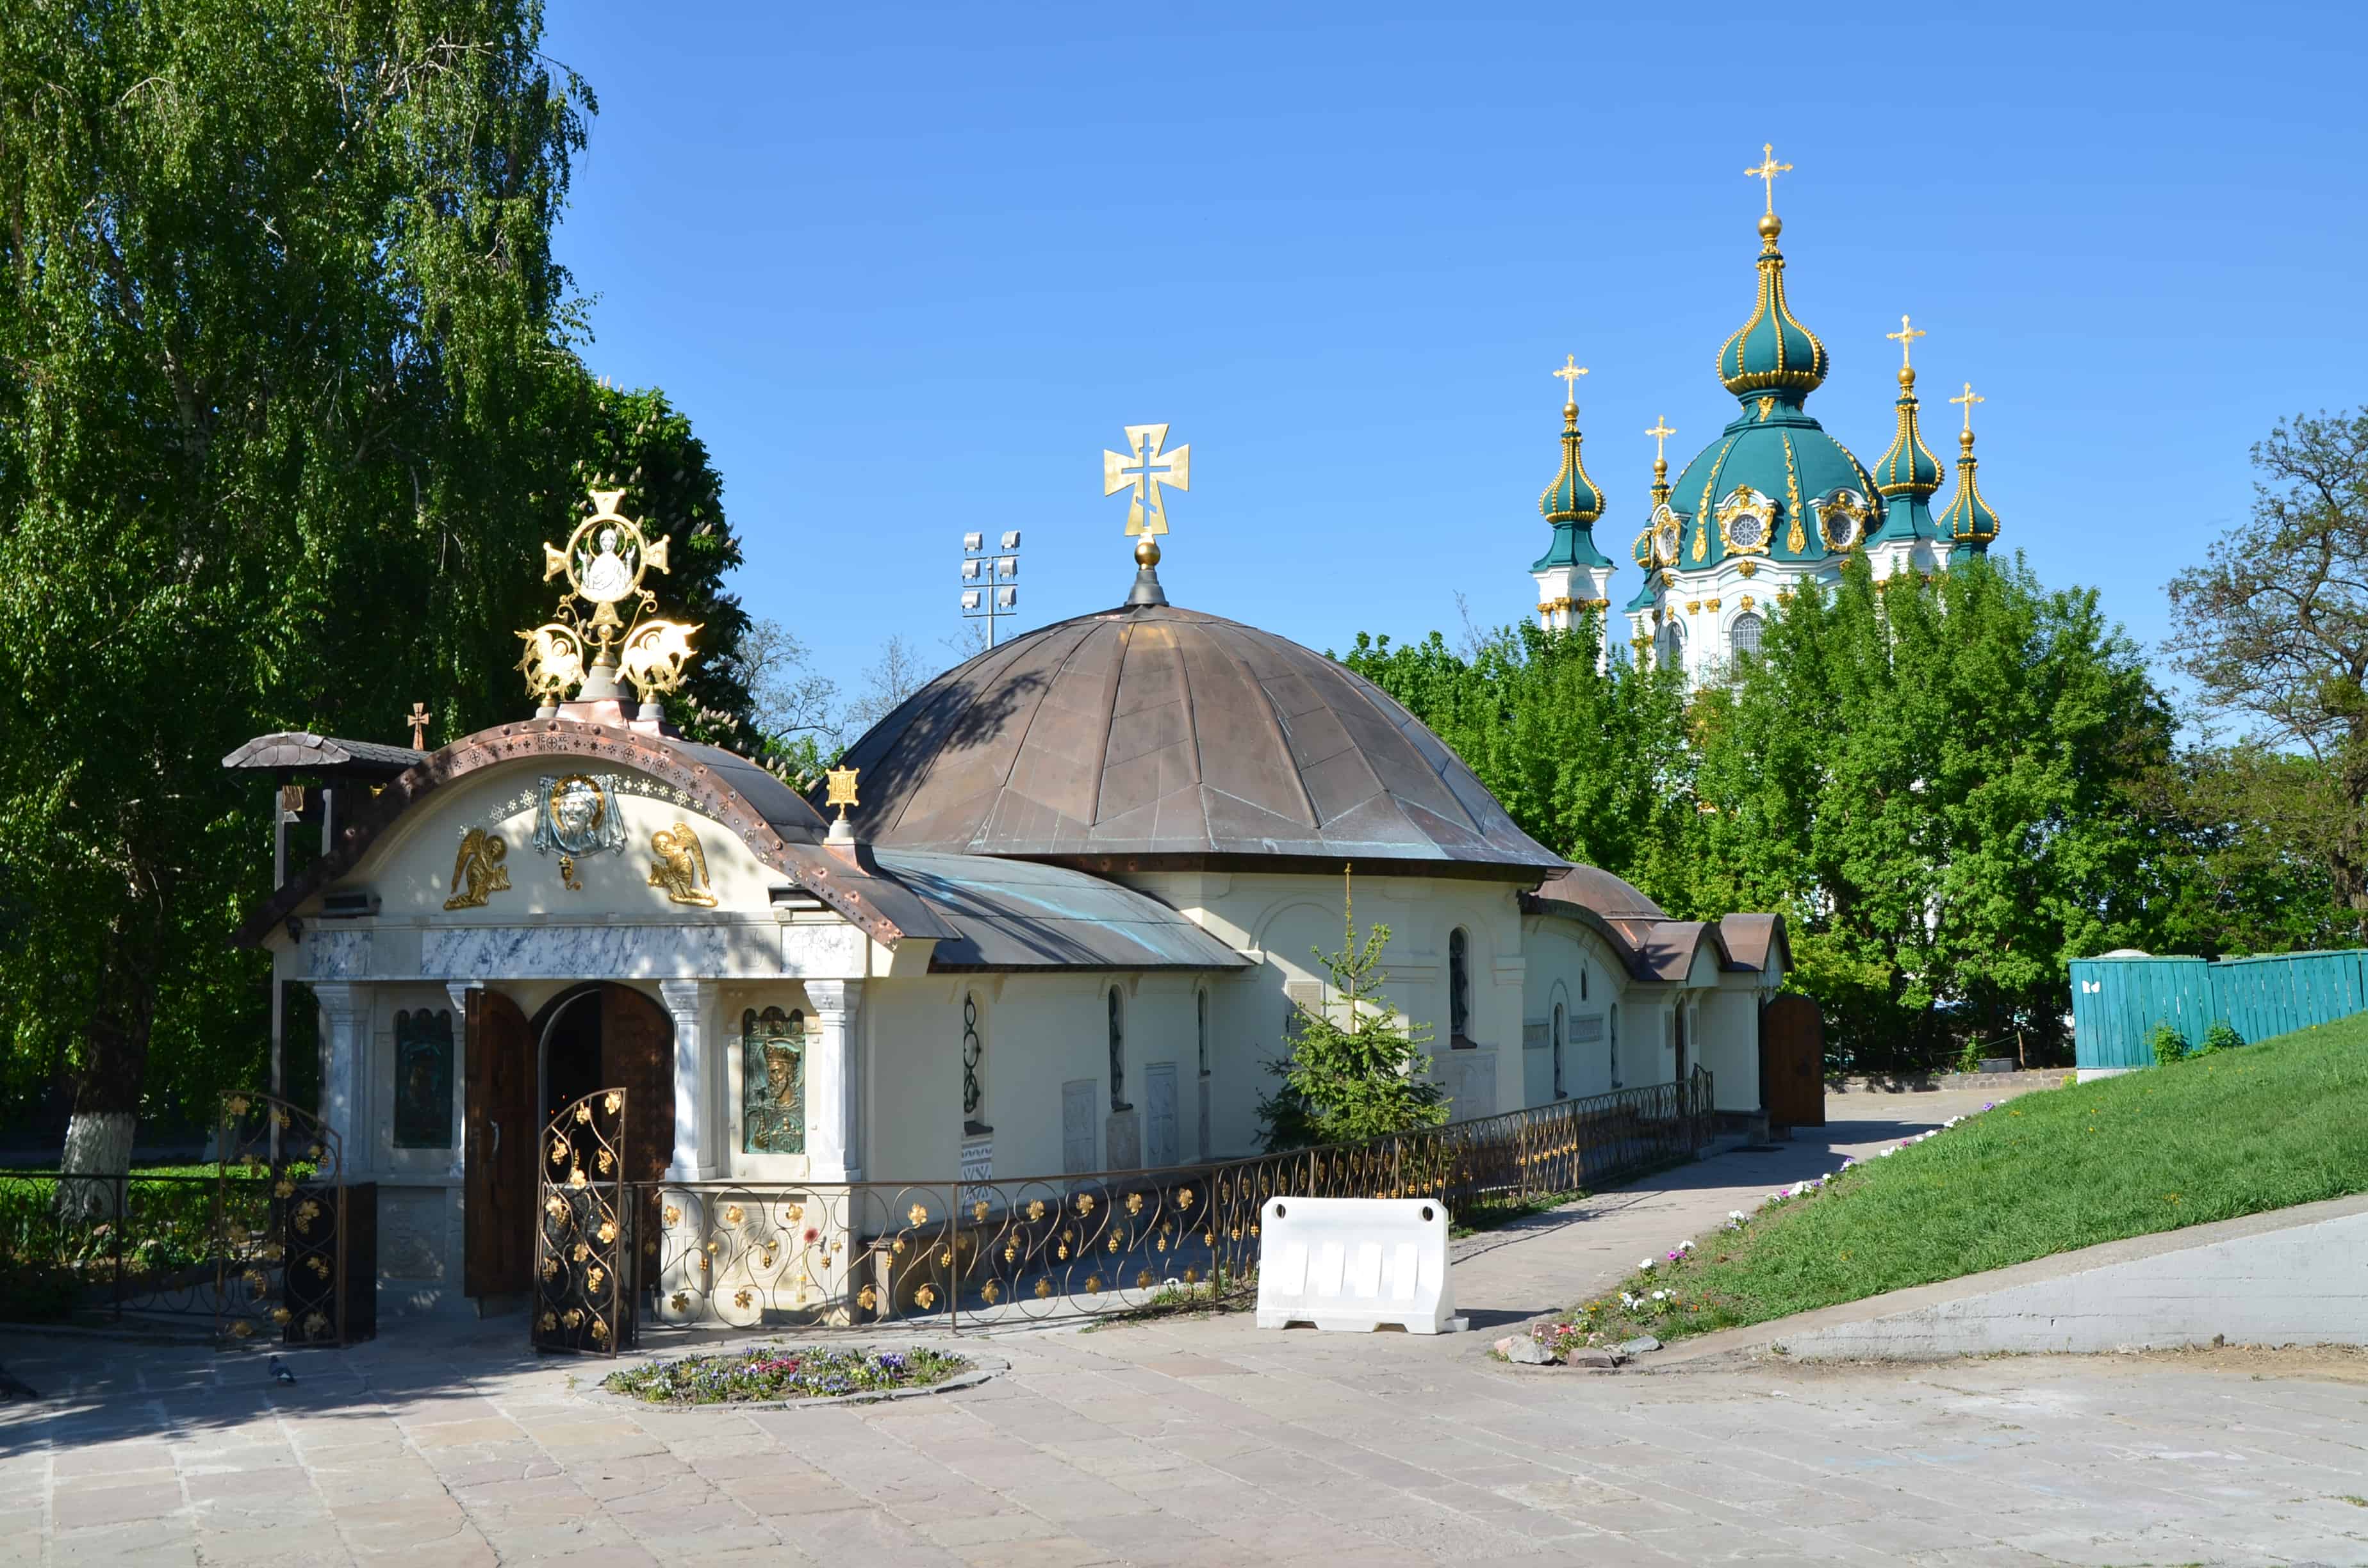 St. Nicholas Bishop of Myra Church in Kyiv, Ukraine